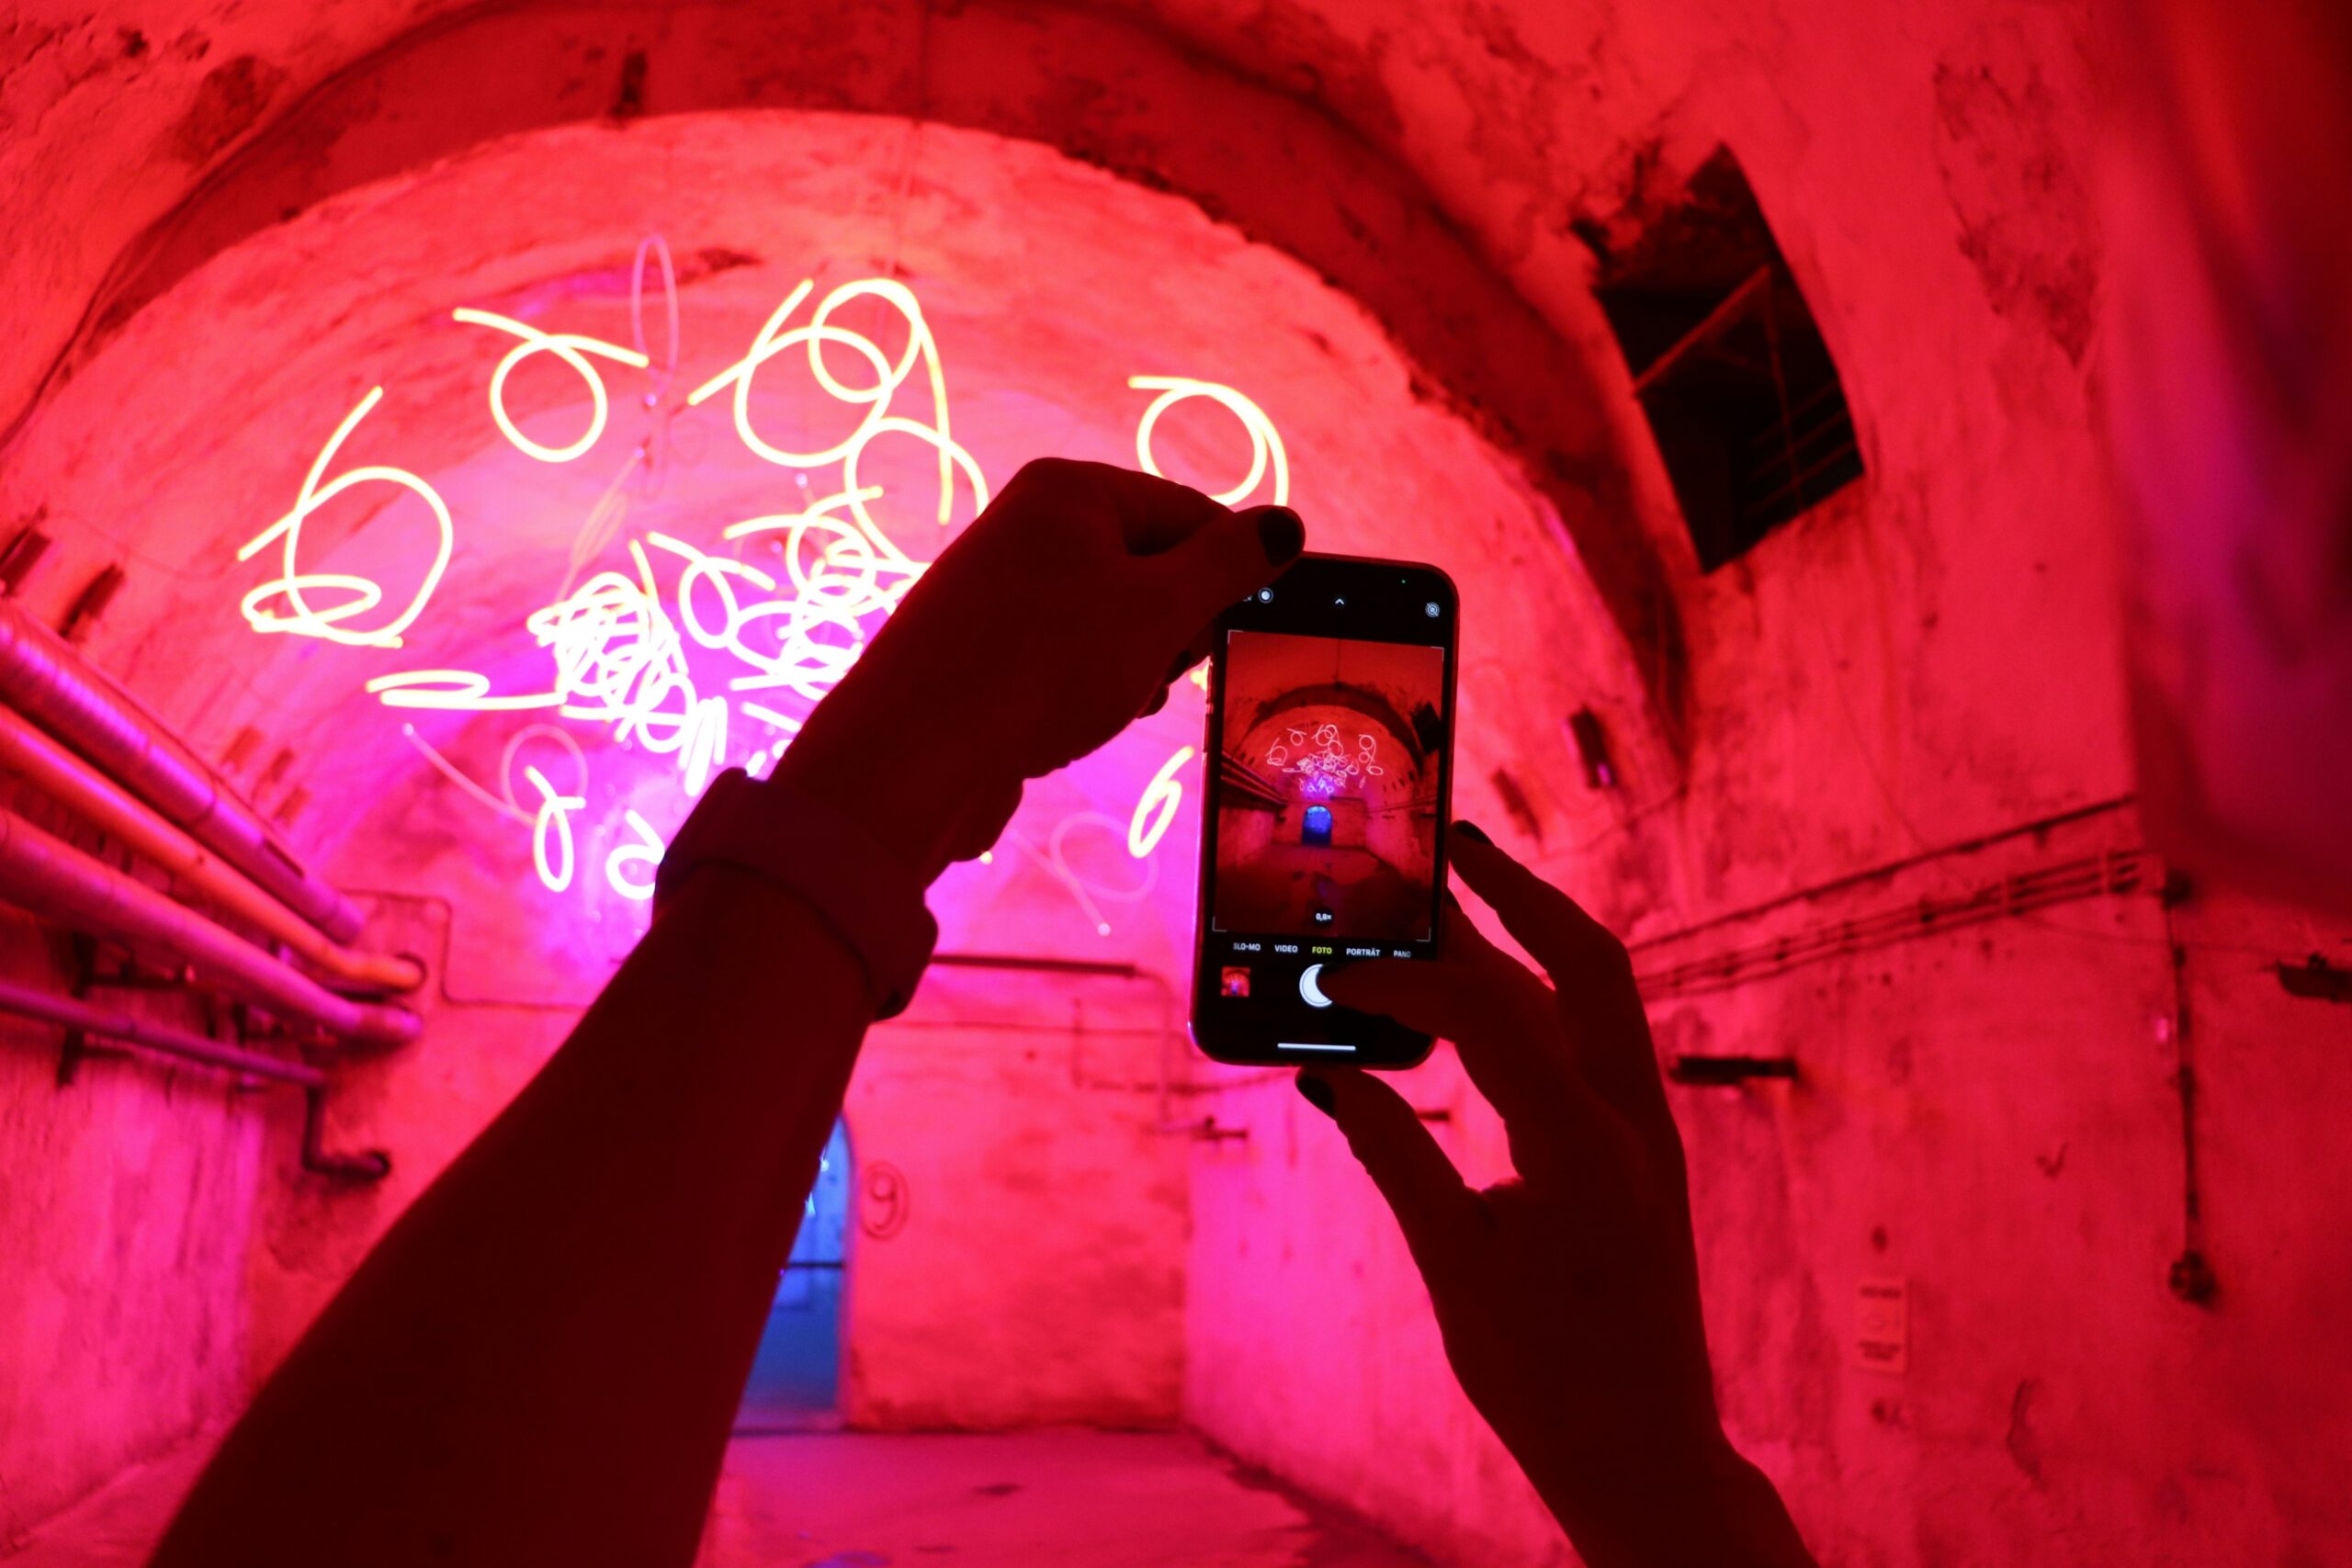 Smartphone, das Bild von einem Tunnel mit roten Lichtröhren macht. Emotional aufgeladenes Bild.